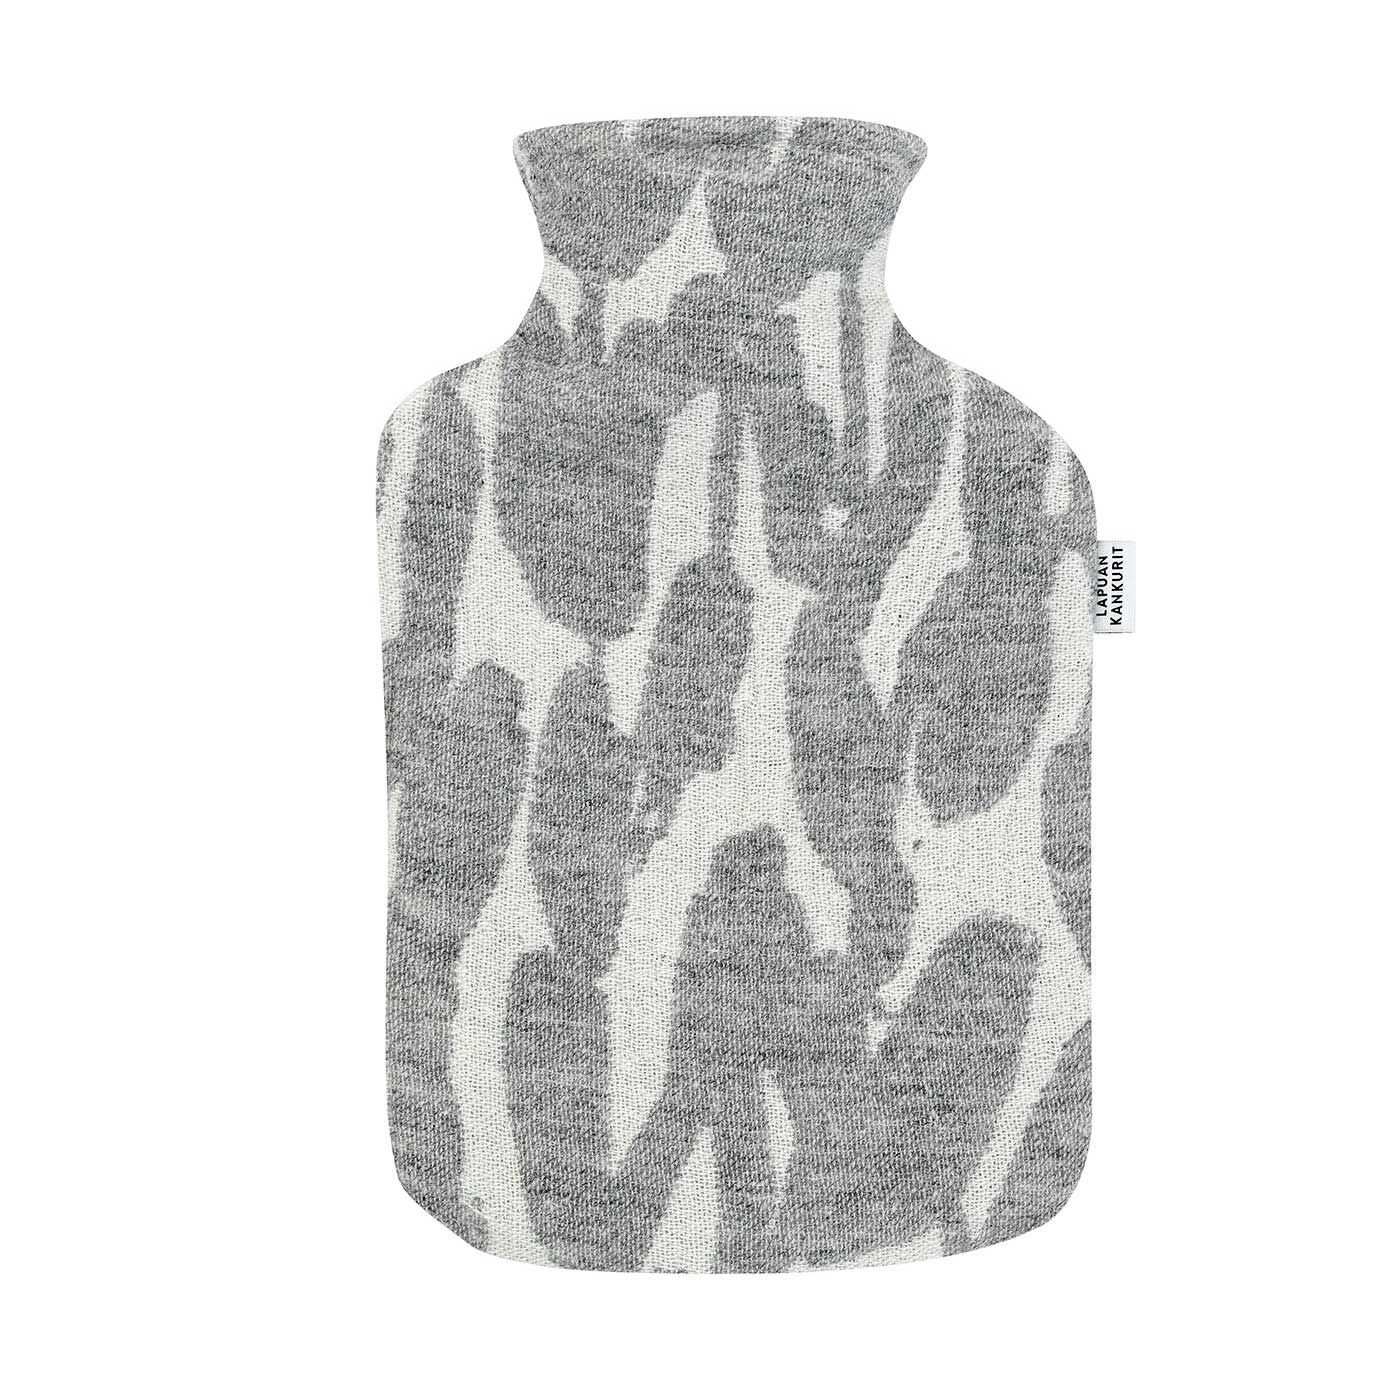 Lapuan Kankurit Wärmflasche JÄKÄLÄ Farbe: white-grey, 100 % Wolle aus Finnland  